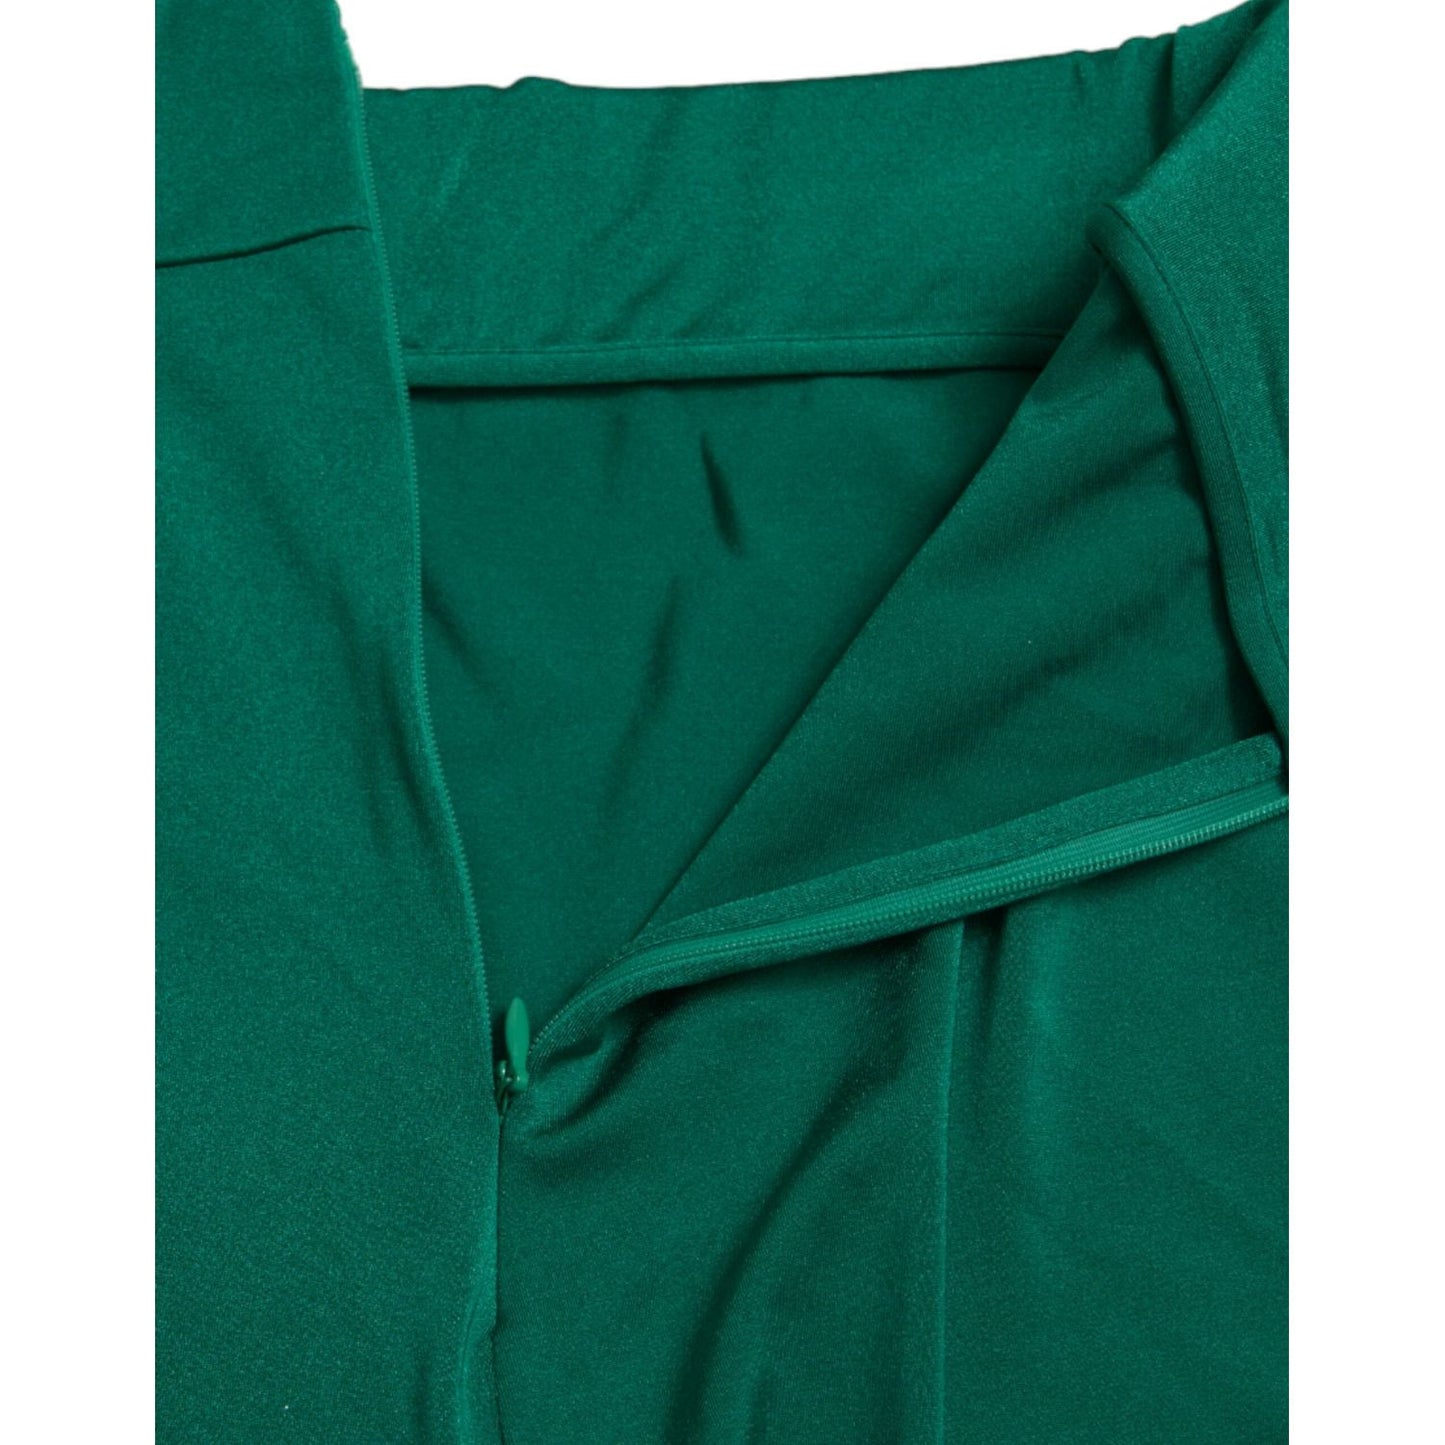 Dolce & Gabbana Green High Waist Designer Leggings green-nylon-stretch-slim-leggings-pants